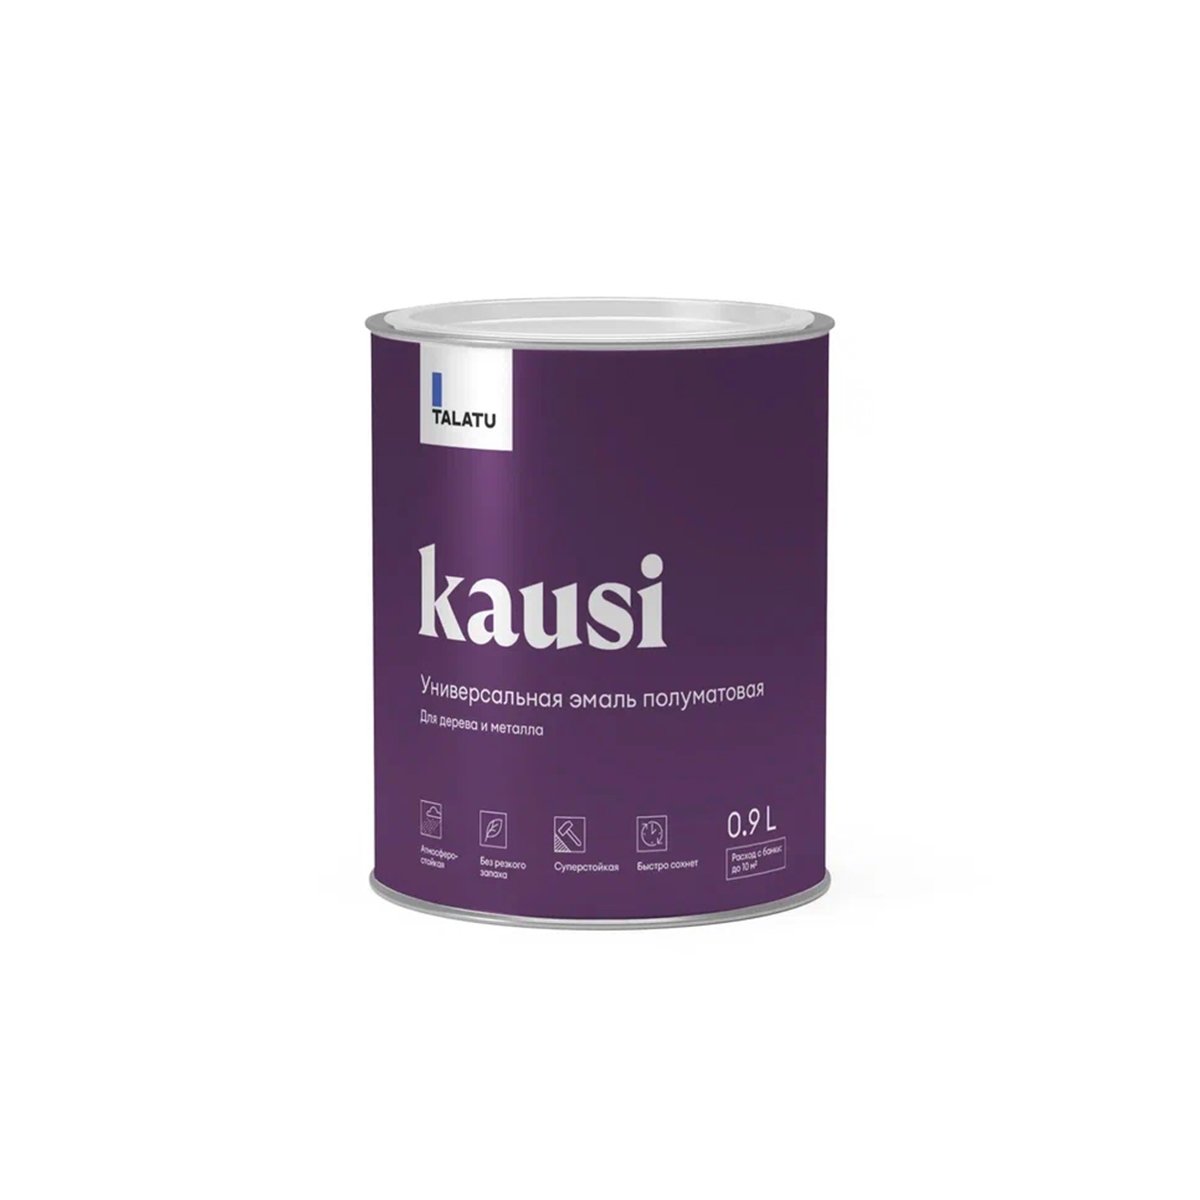 Эмаль универсальная Talatu Kausi, алкидная, полуматовая, база C, бесцветная, 0,9 л алкидная эмаль для радиаторов olecolor